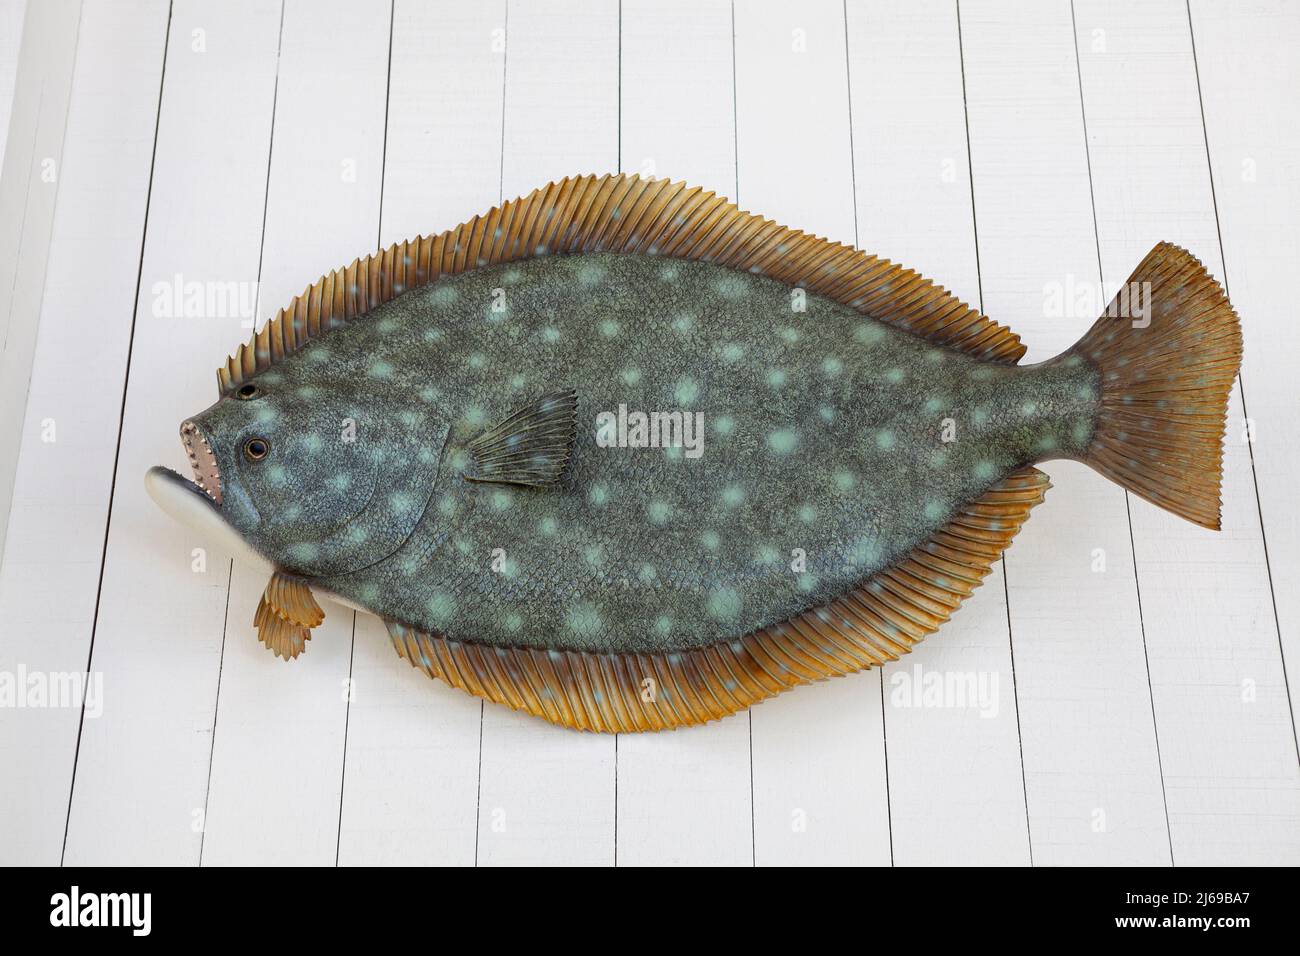 Modello di pesce sul muro., artificiale o modello di pesce finto appeso sul muro di legno di colore bianco, decorazione per la bellezza Foto Stock